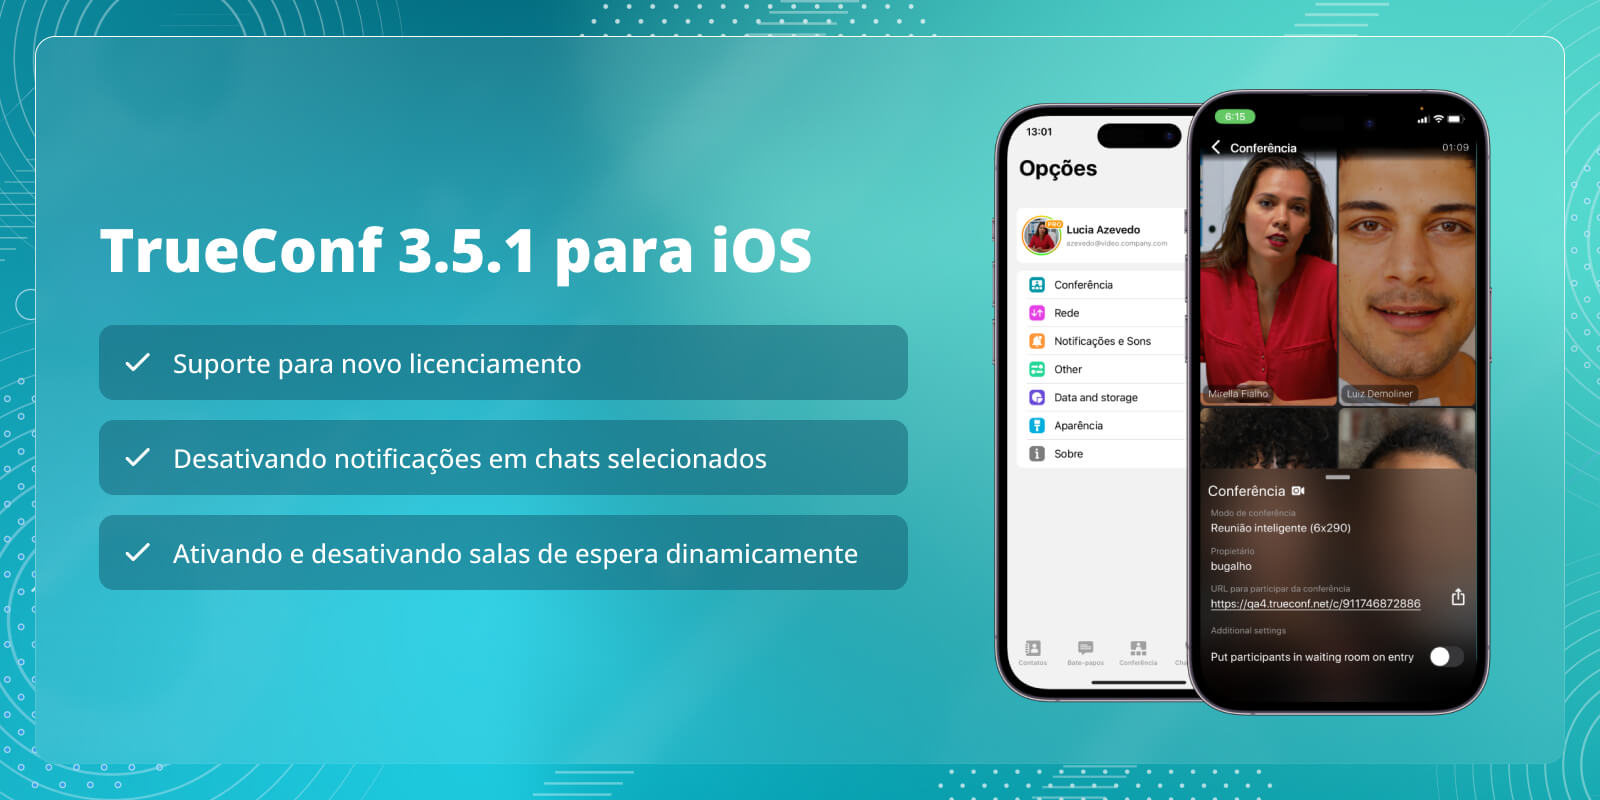 TrueConf 3.5.1 para iOS: suporte para novo licenciamento e silenciamento de bate-papos 1